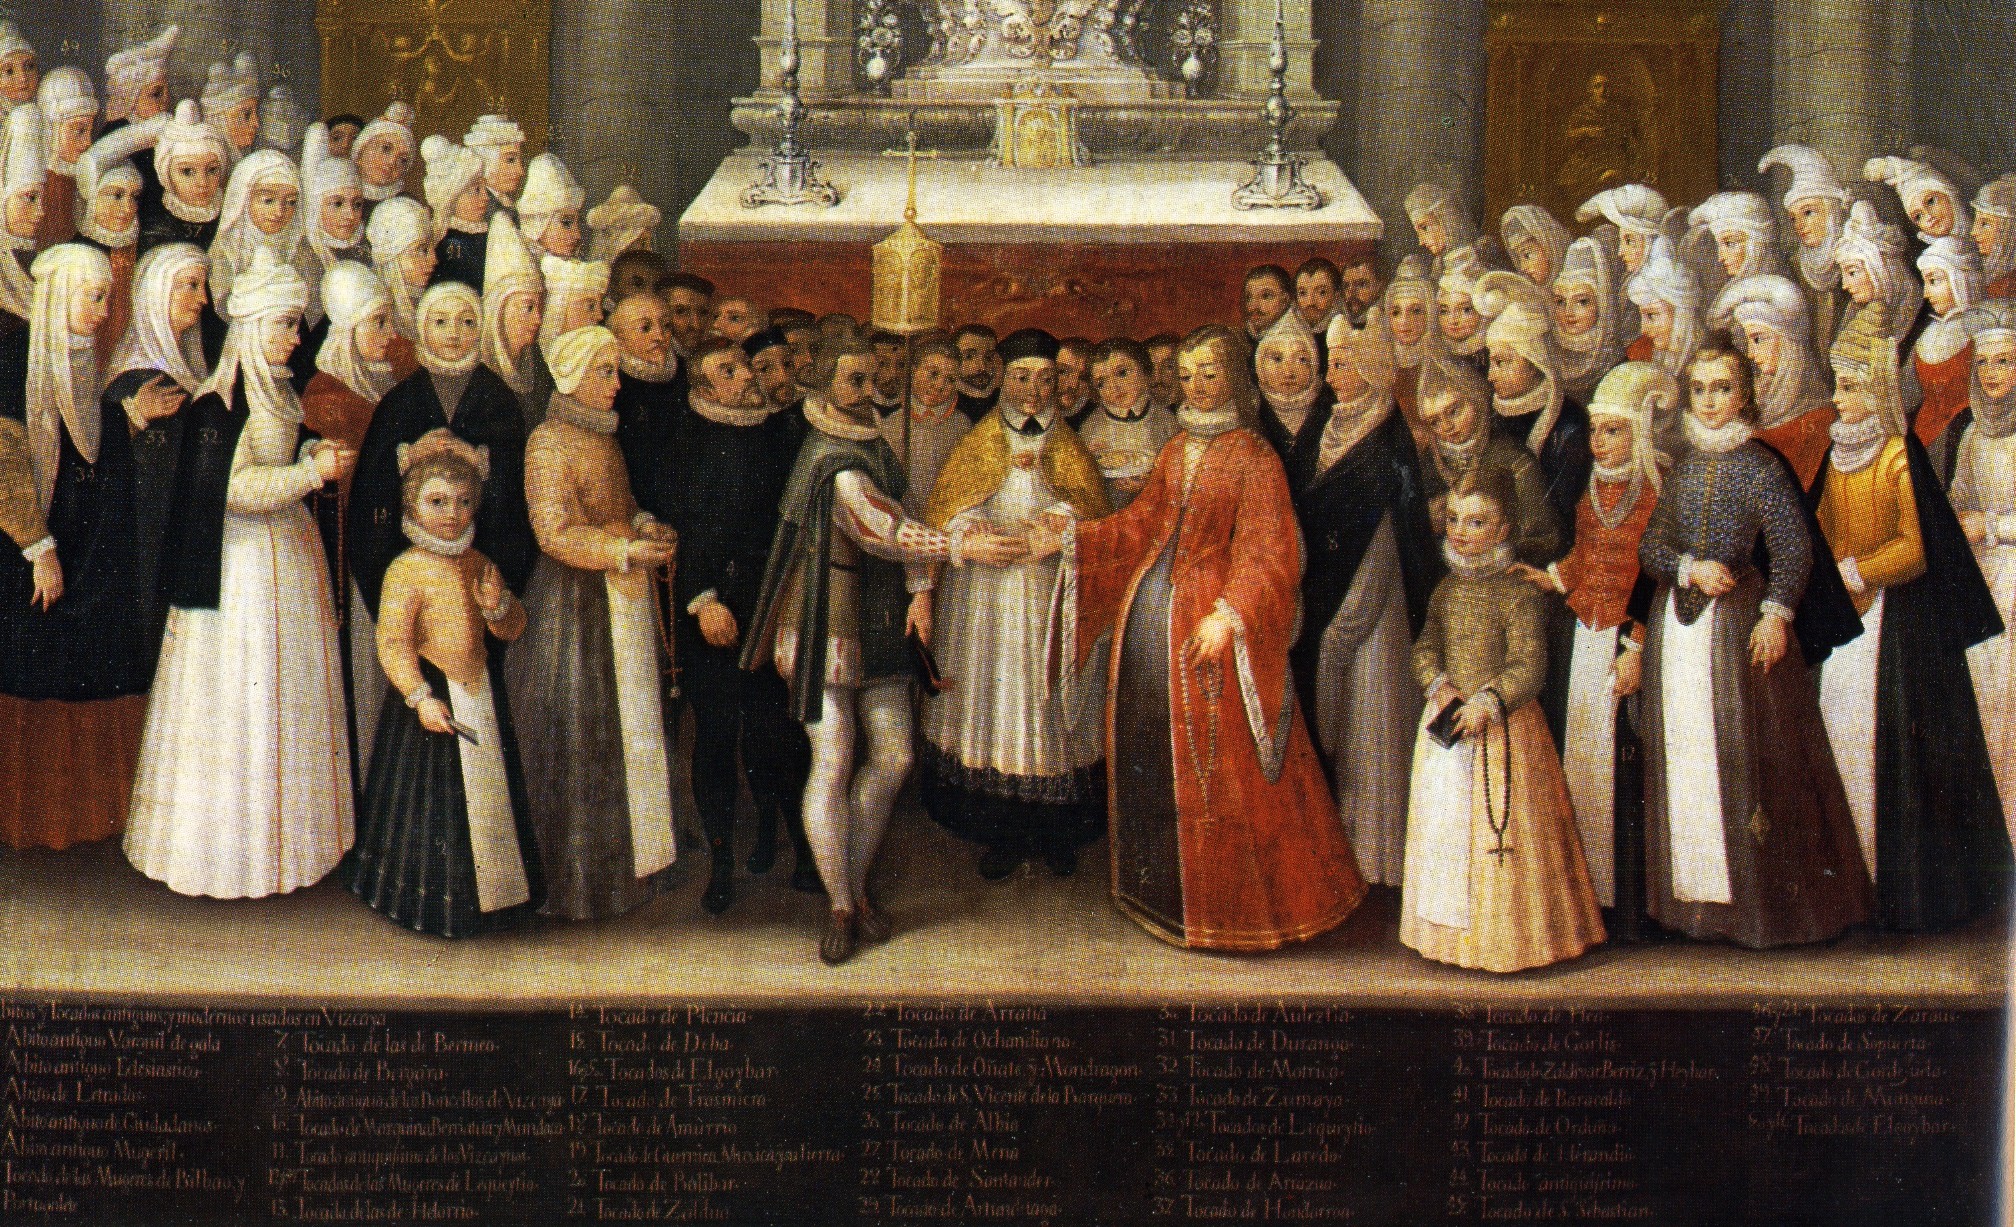 Boda de hidalgos en Begoña [Noble wedding in Begoña] by Francisco Vázquez de Mendieta, 1607